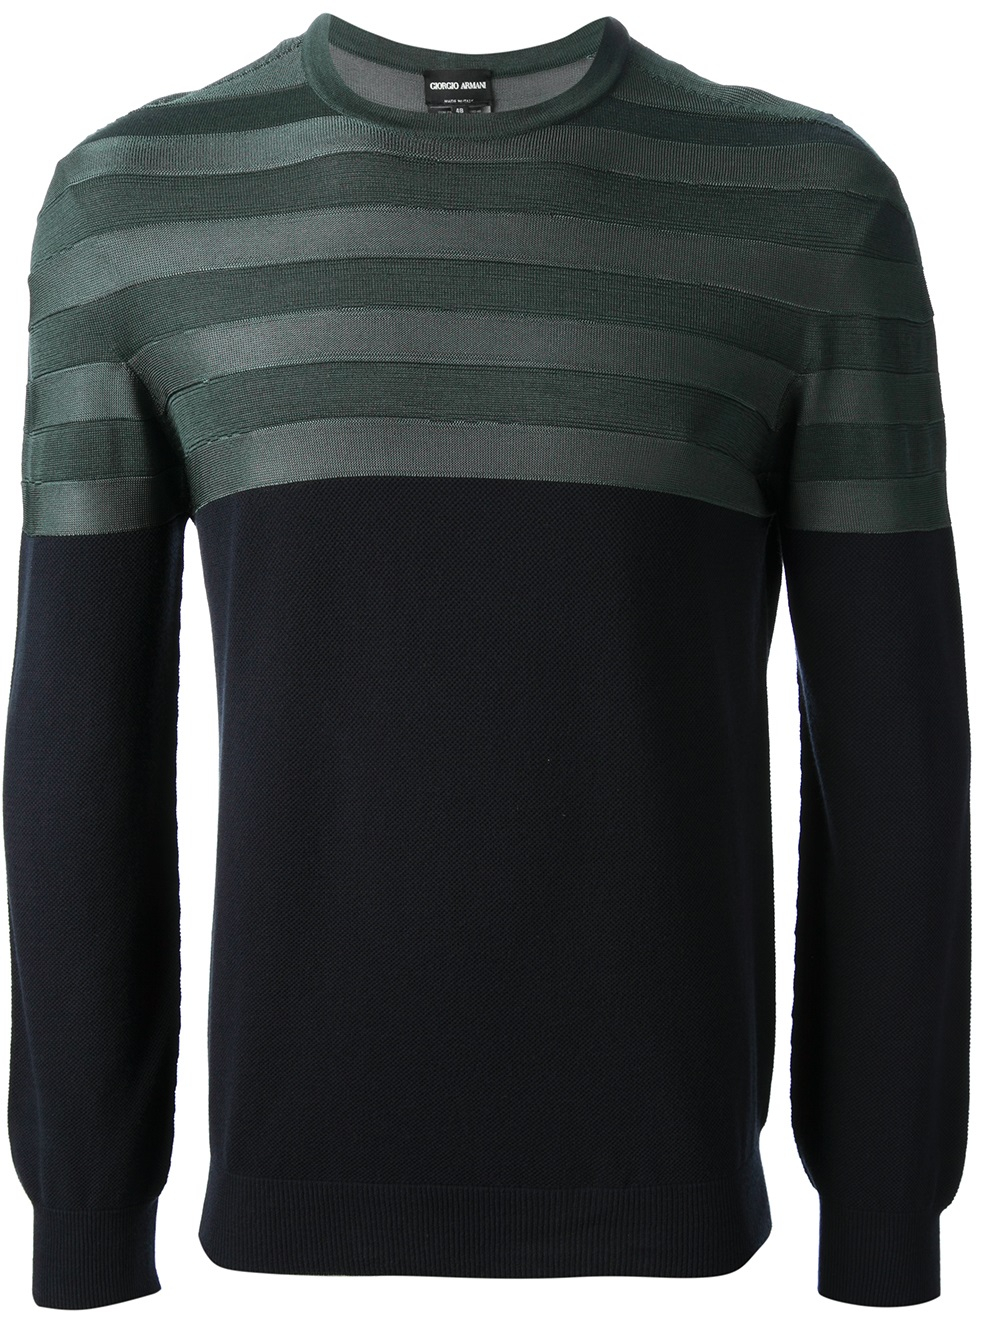 Giorgio Armani Striped Panel Sweater in Blue (Green) for Men - Lyst